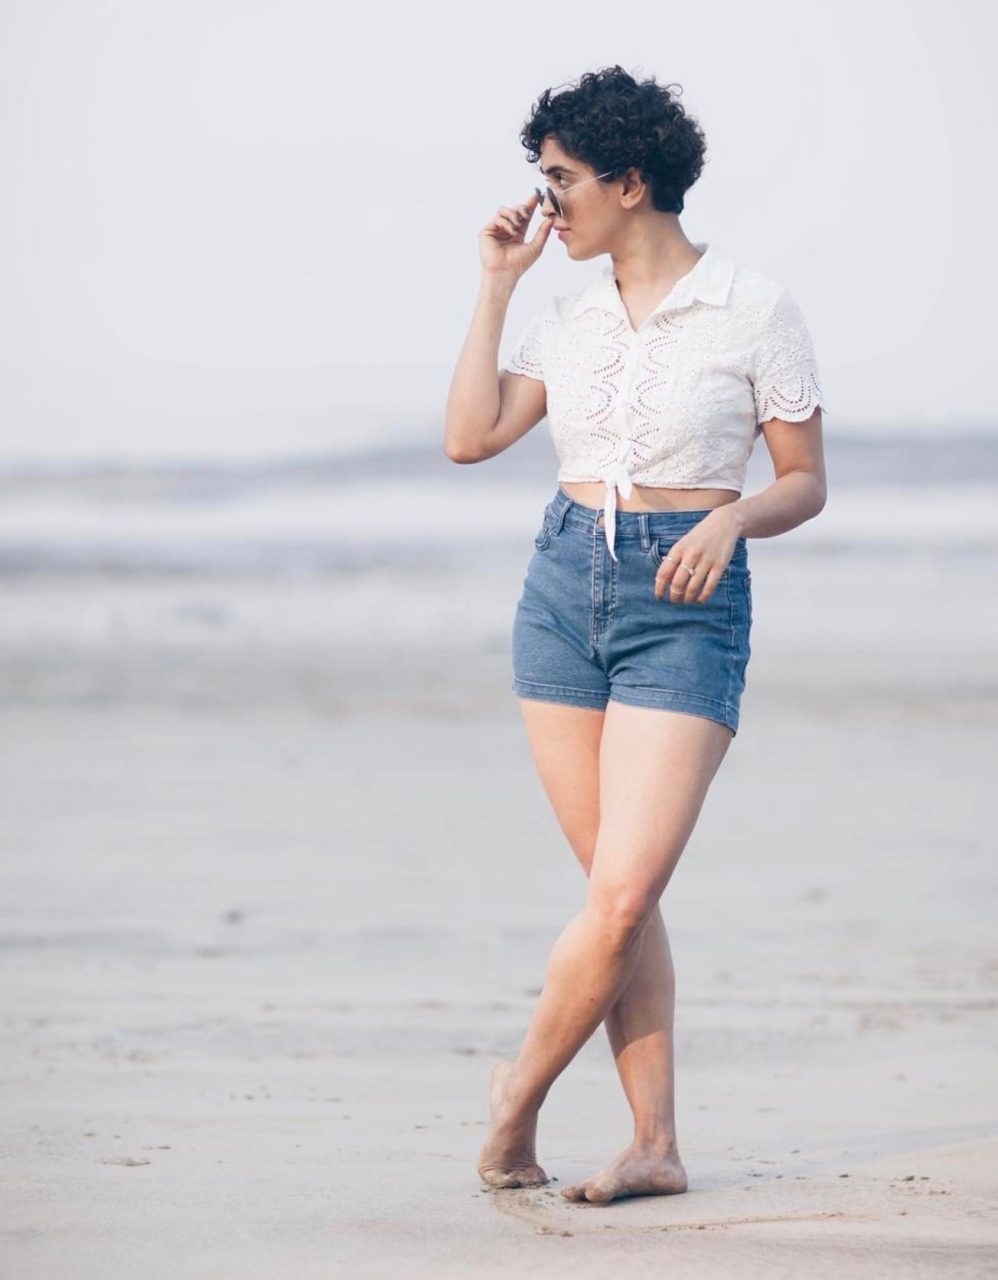 Stylish Photoshoot Of Sanya Malhotra On Beach